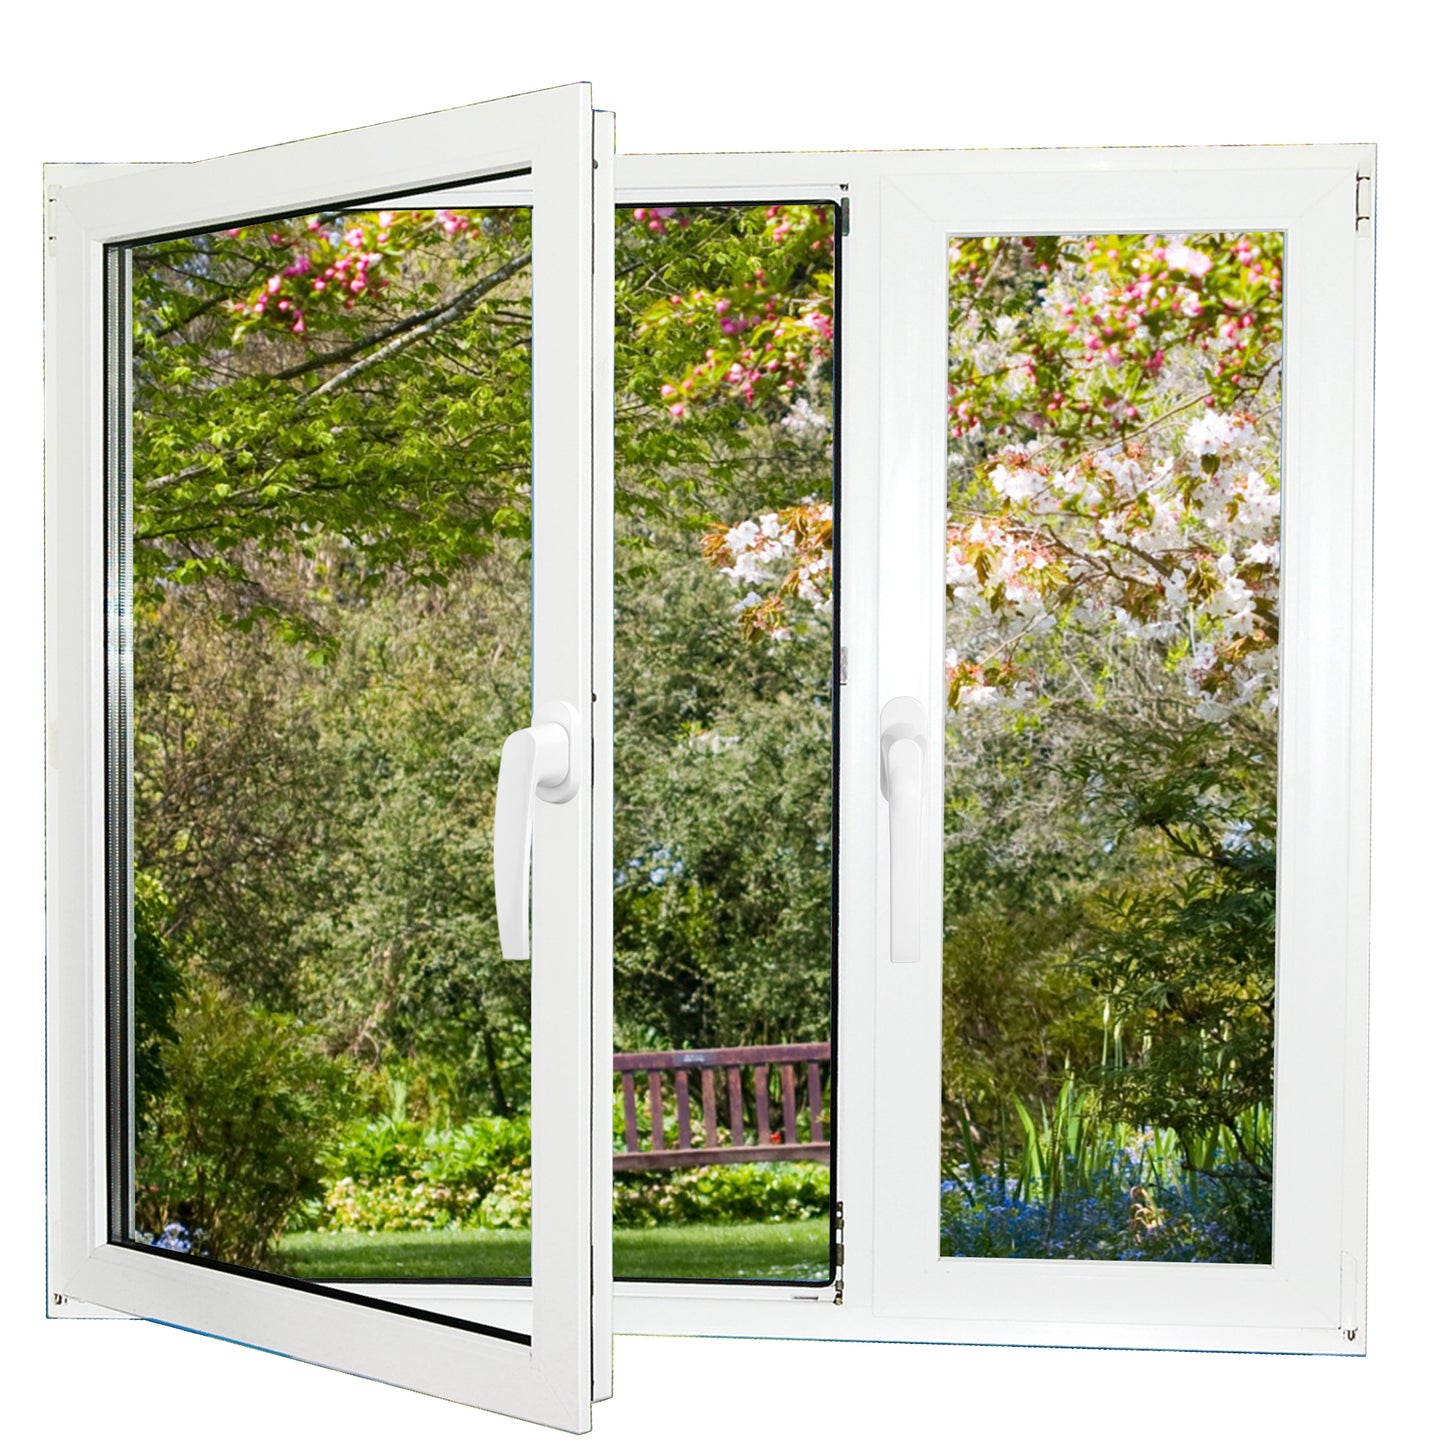 PALMAT Qualitäts-Aluminiumgriff für Fenster | für Flügel & Schiebefenster / Türen | Innen- oder Außenöffnung